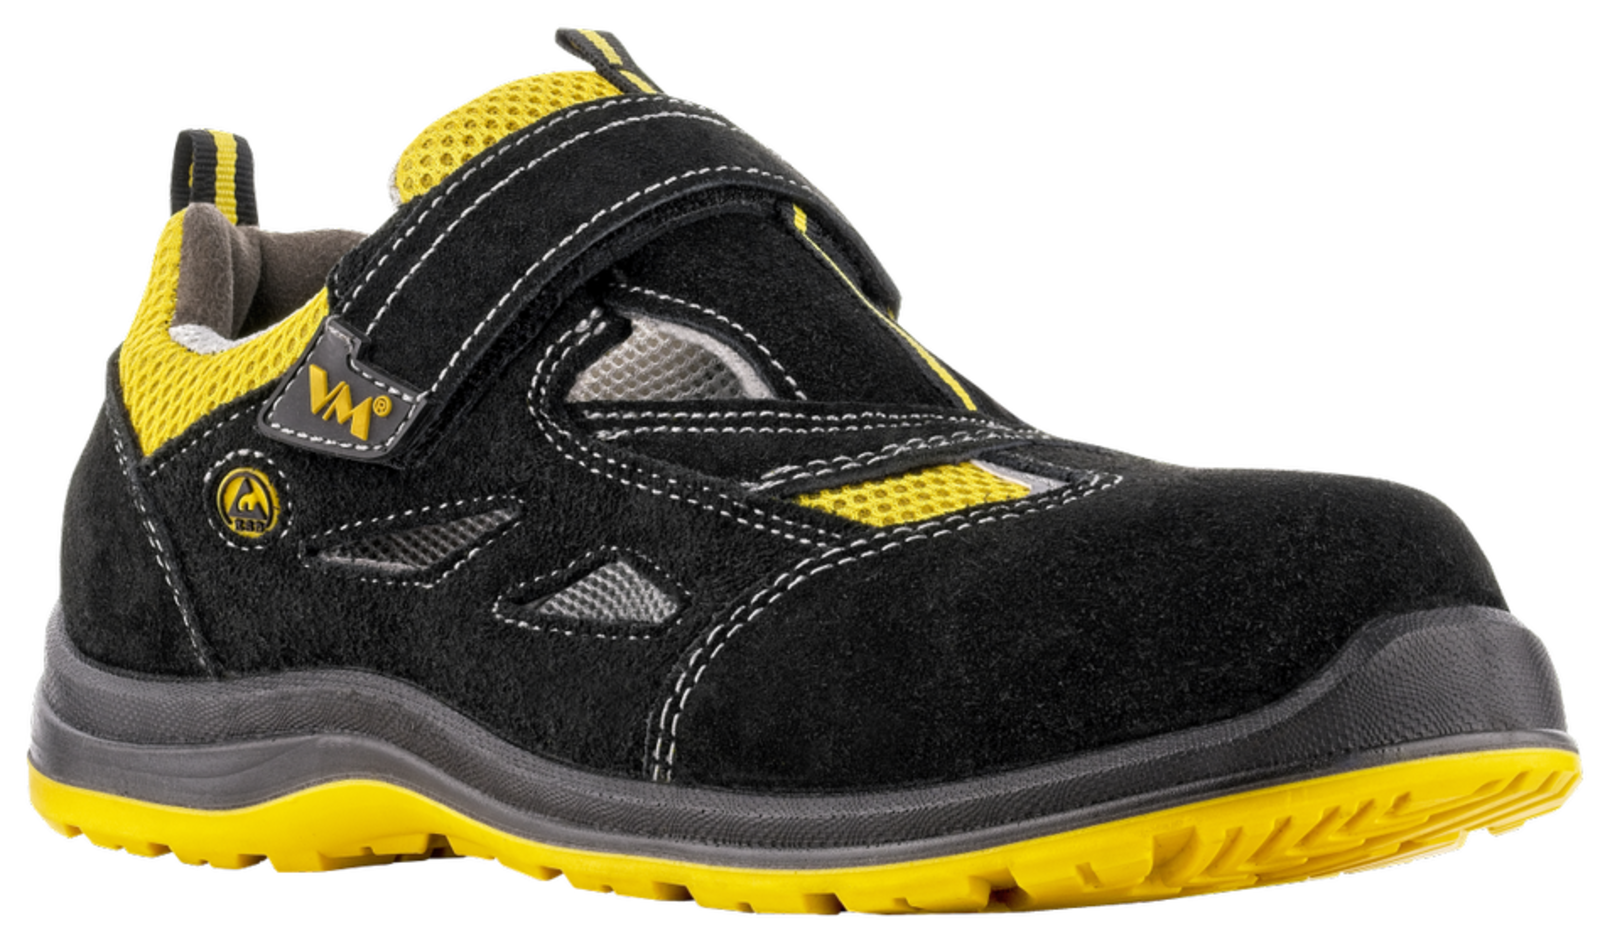 Bezpečnostné sandále VM Michigan S1P ESD - veľkosť: 42, farba: čierna/žltá